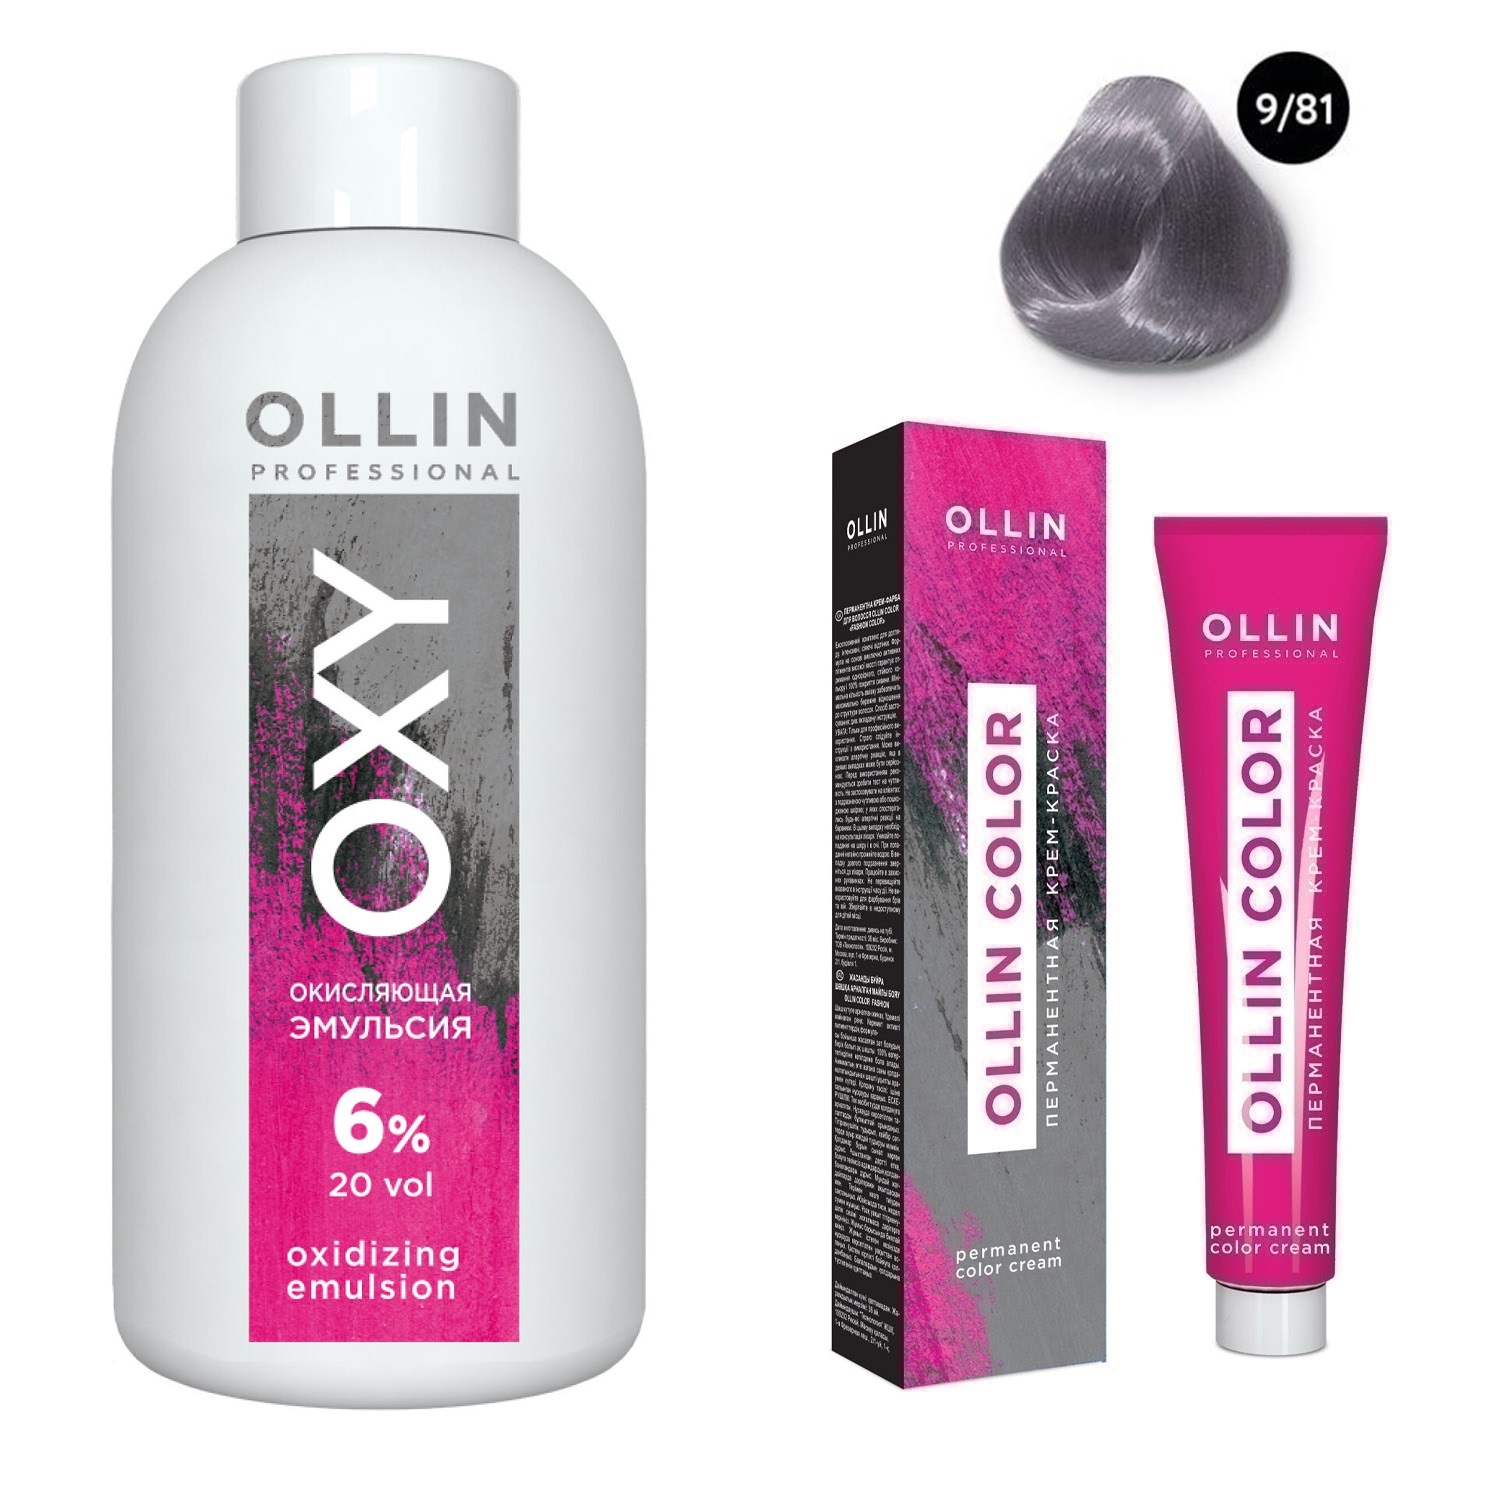 Ollin Professional Набор Перманентная крем-краска для волос Ollin Color оттенок 9/81 блондин жемчужно-пепельный 100 мл + Окисляющая эмульсия Oxy 6% 150 мл (Ollin Professional, Ollin Color) фото